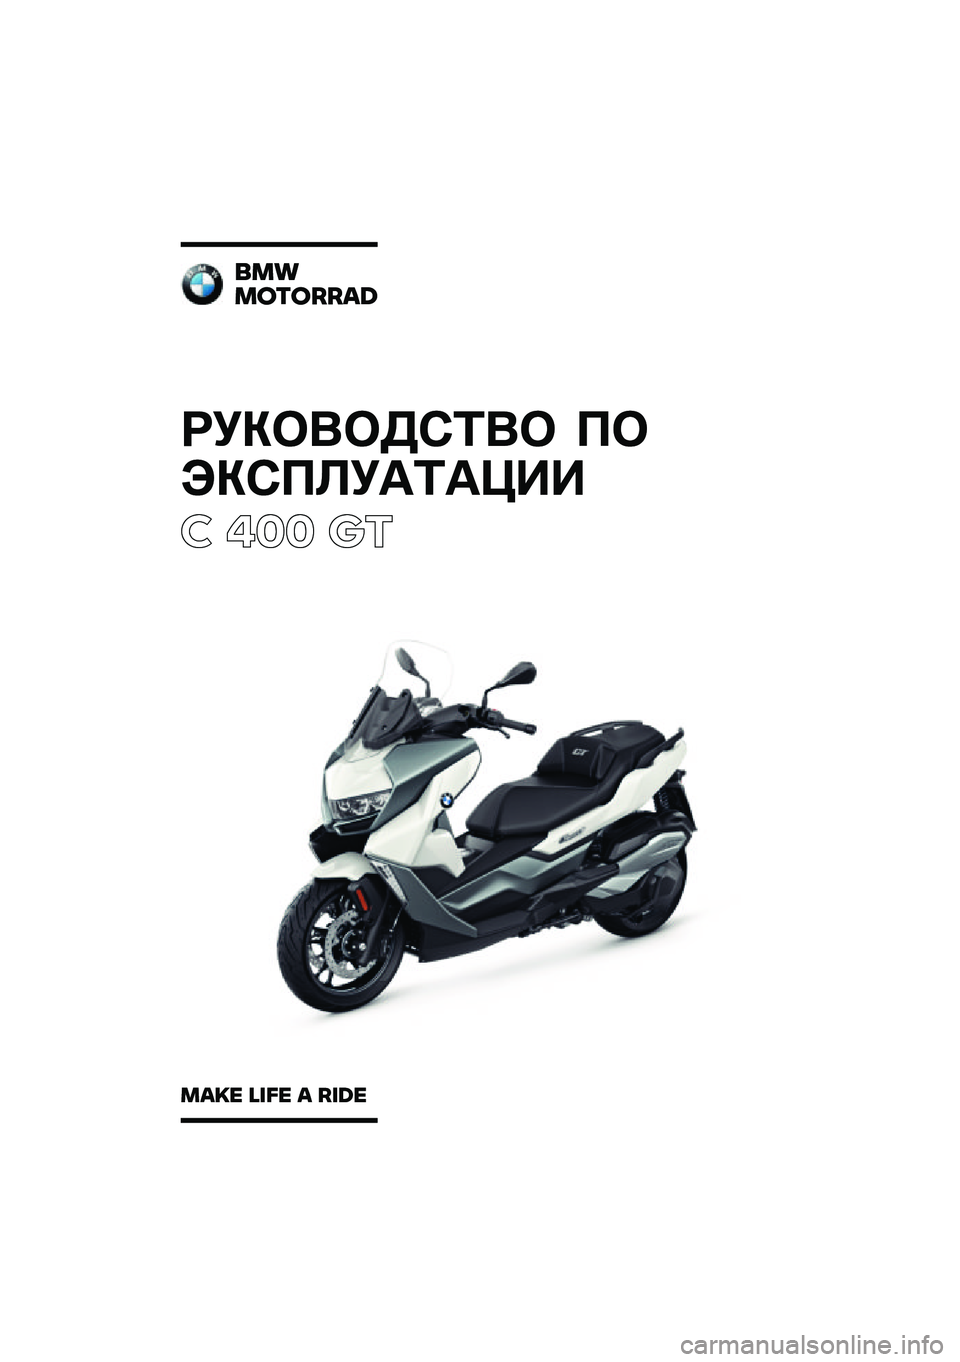 BMW MOTORRAD C 400 GT 2020  Руководство по эксплуатации (in Russian) ��������\b�	�� �
�
���\b�
�\f��
�	�
���
� ��� ��\b
���
�������\b�	
��\b�
� �\f�
�� �\b ��
�	� 